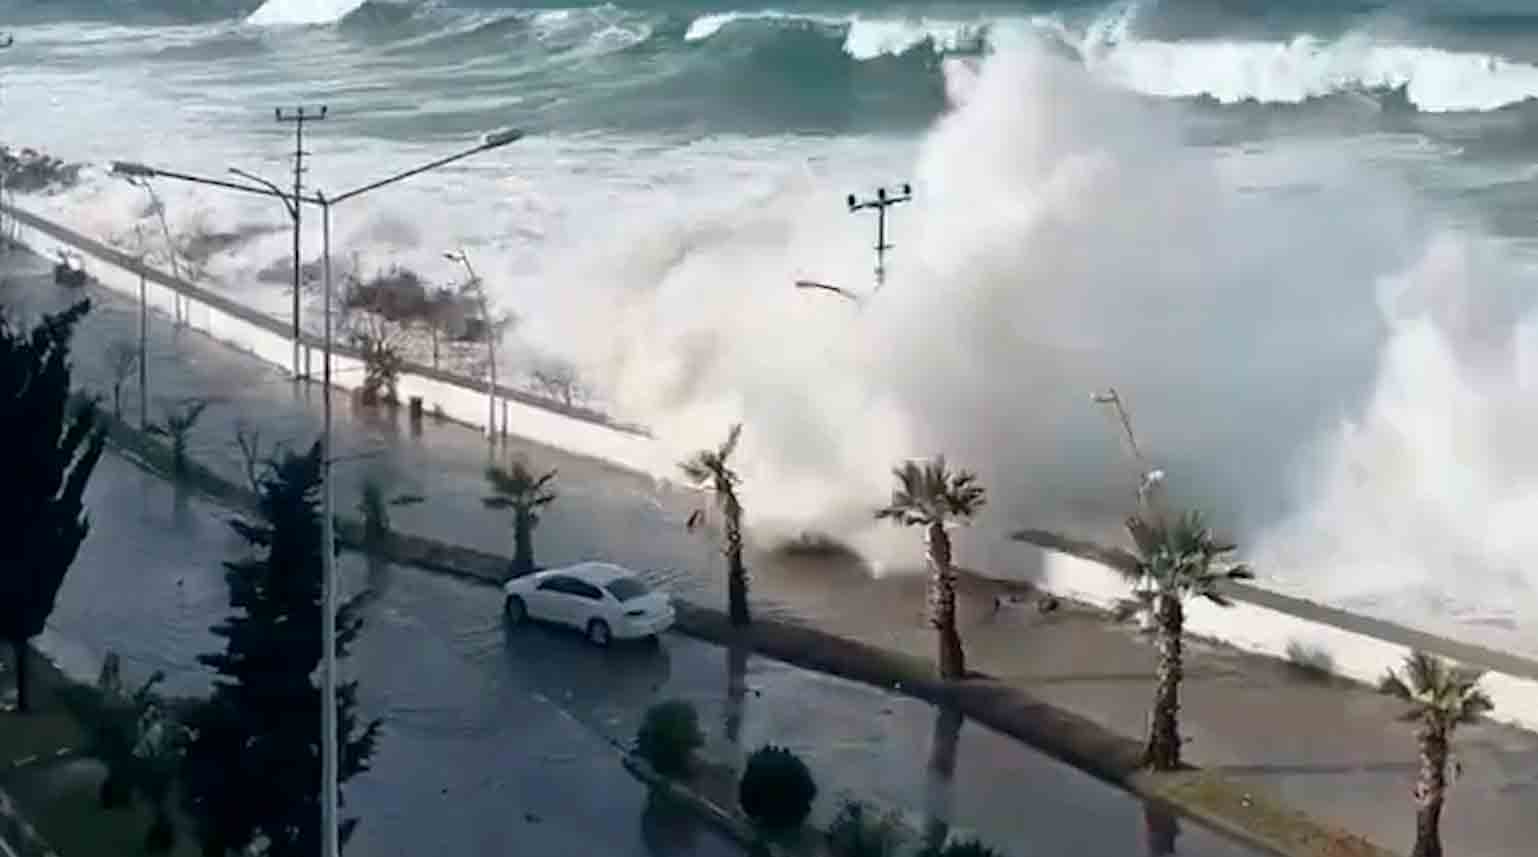 La vidéo montre d'énormes vagues frappant la côte turque. Photo et vidéo : Twitter @volcaholic1